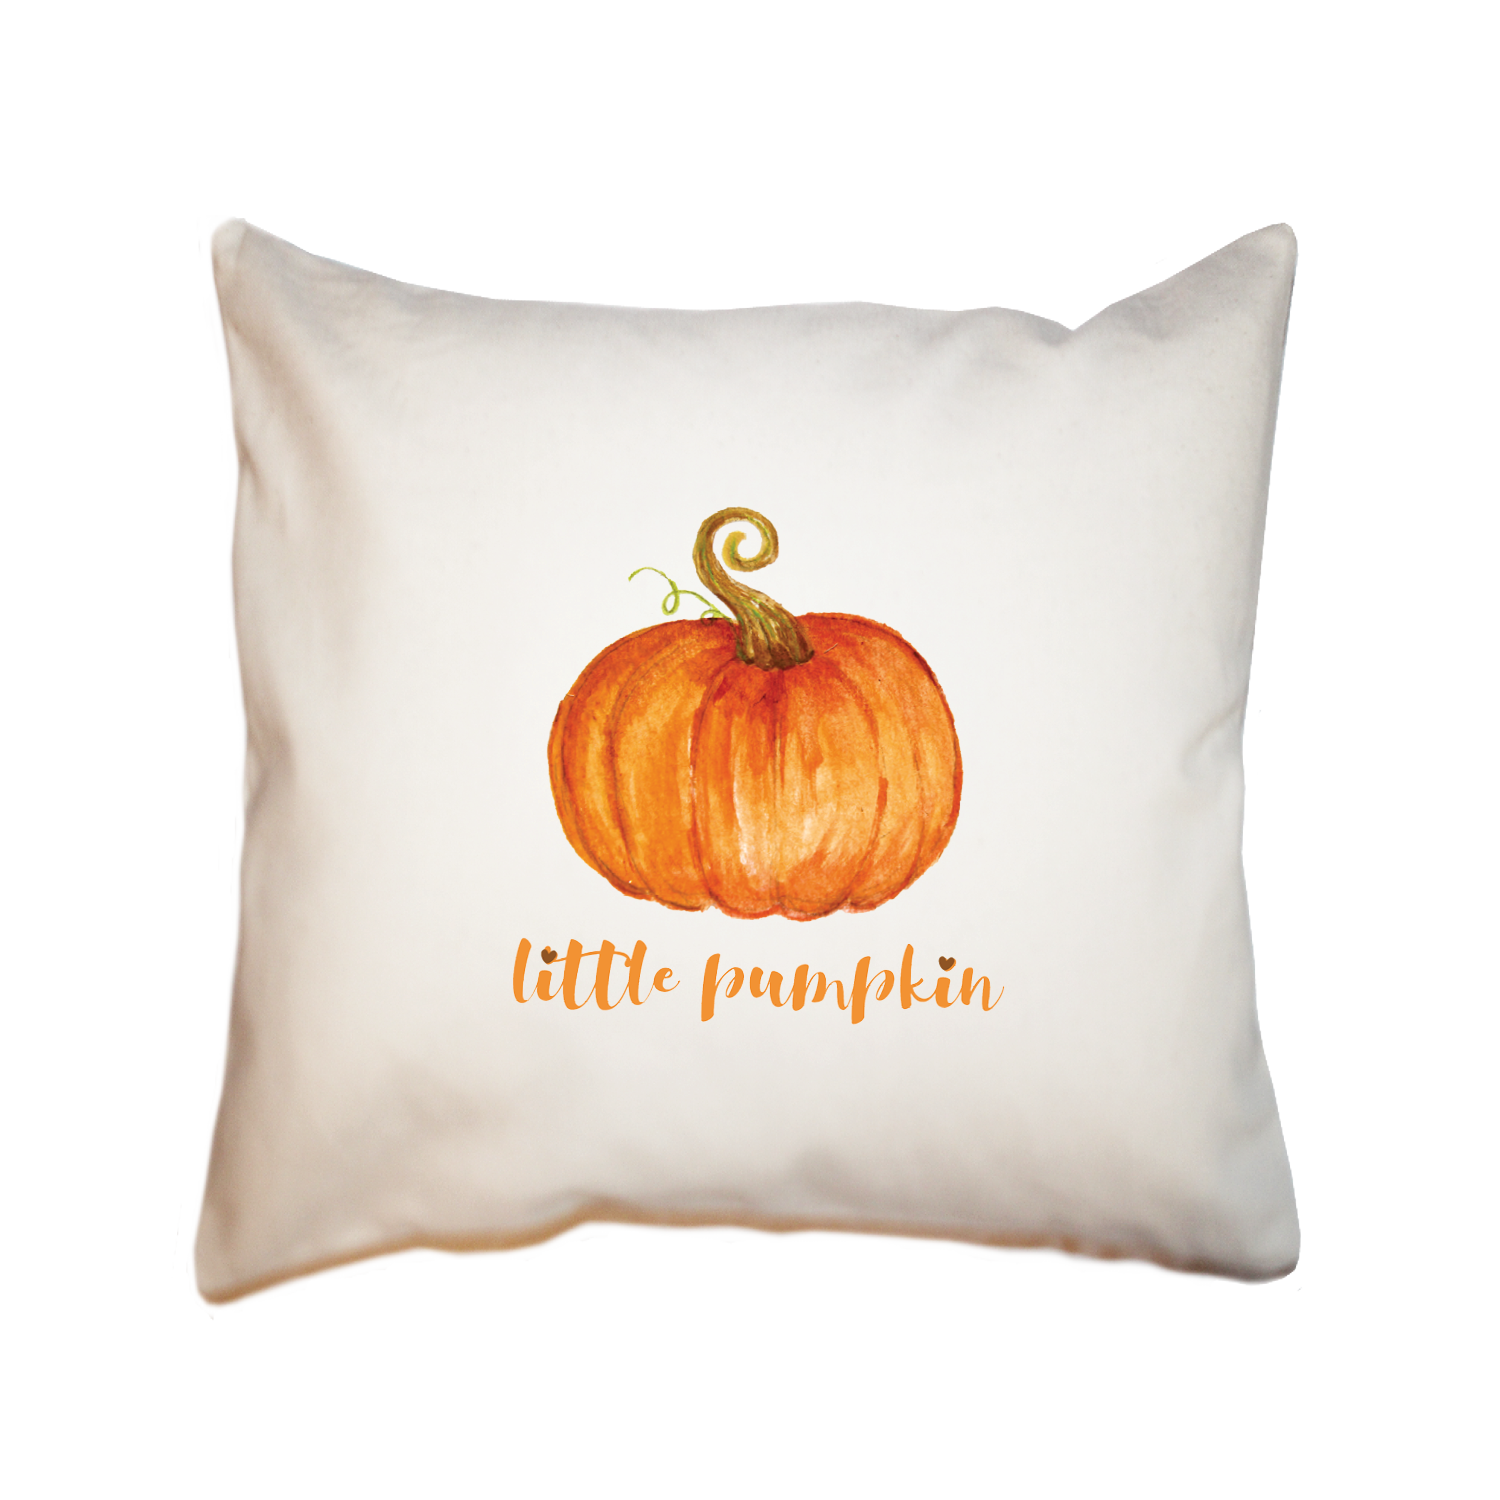 little pumpkin square pillow